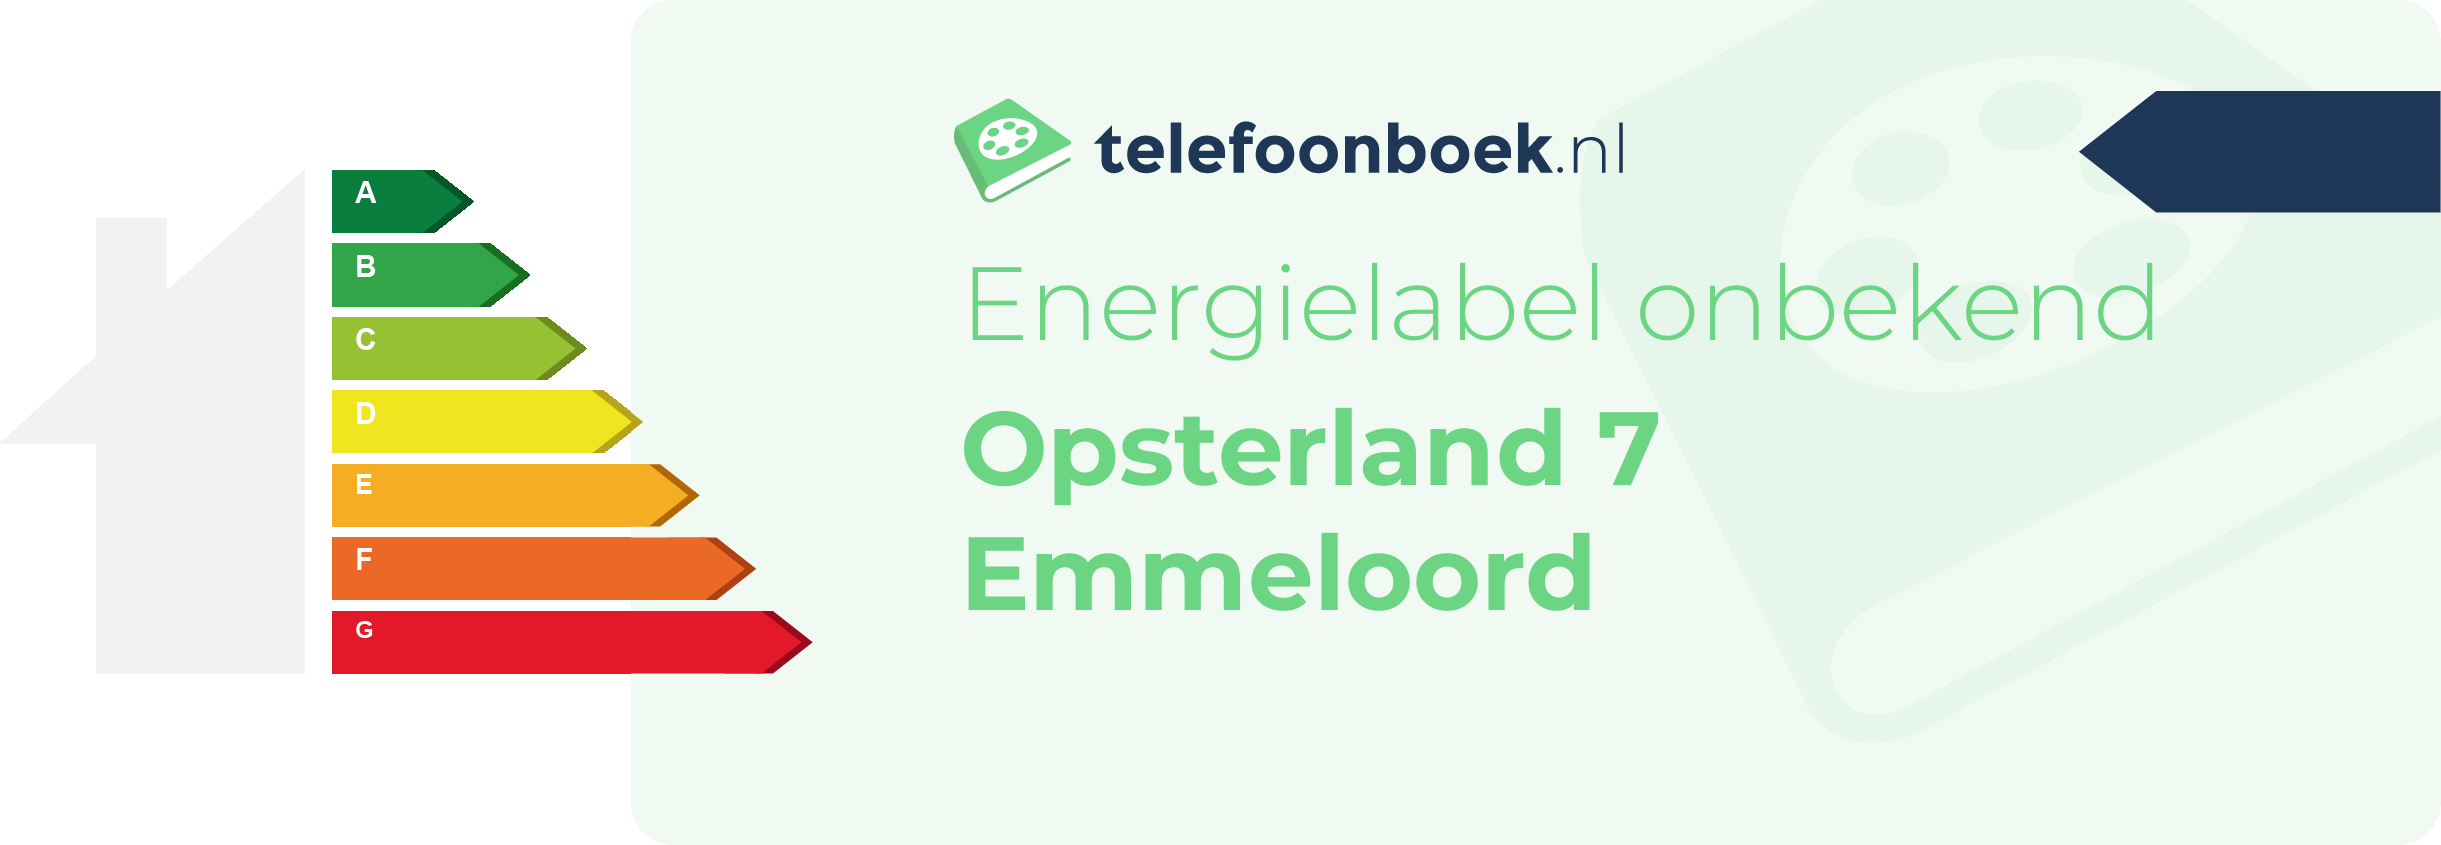 Energielabel Opsterland 7 Emmeloord